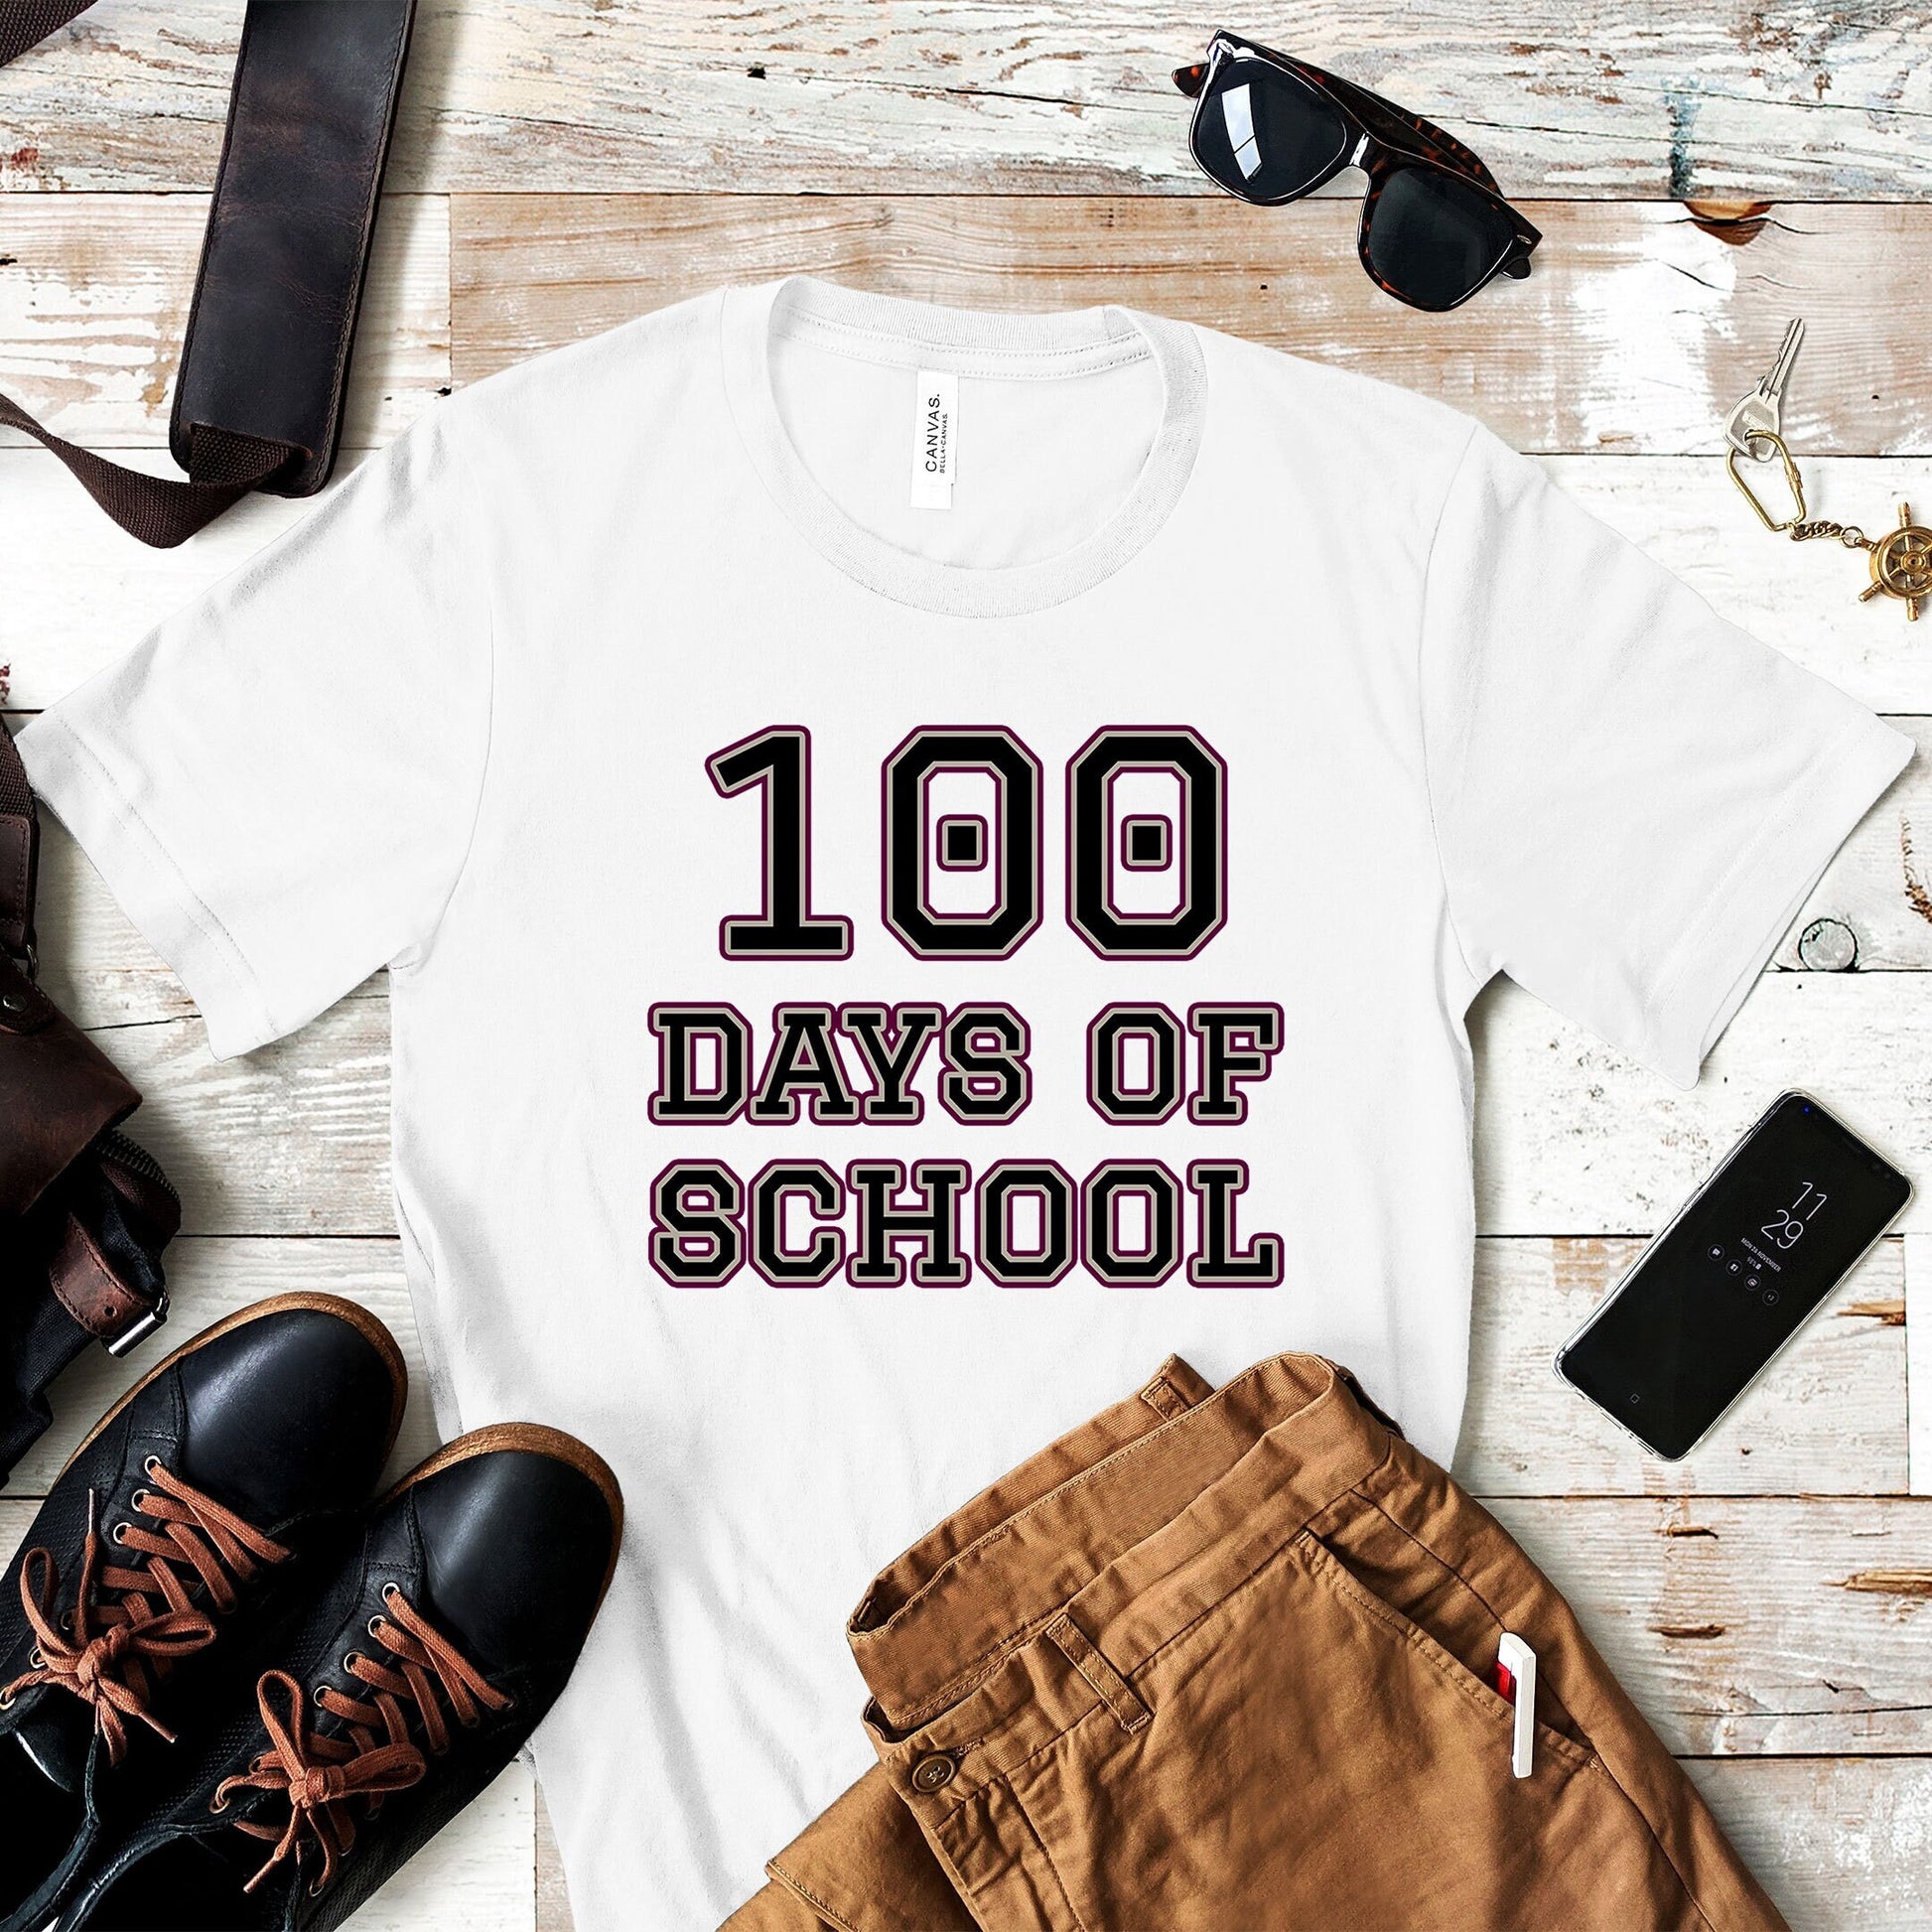 100 Days of School Shirt, First 100 Day of School Shirt, Funny Back to School Tee, Funny 100 Day School Shirt, Simple Teacher Celebration